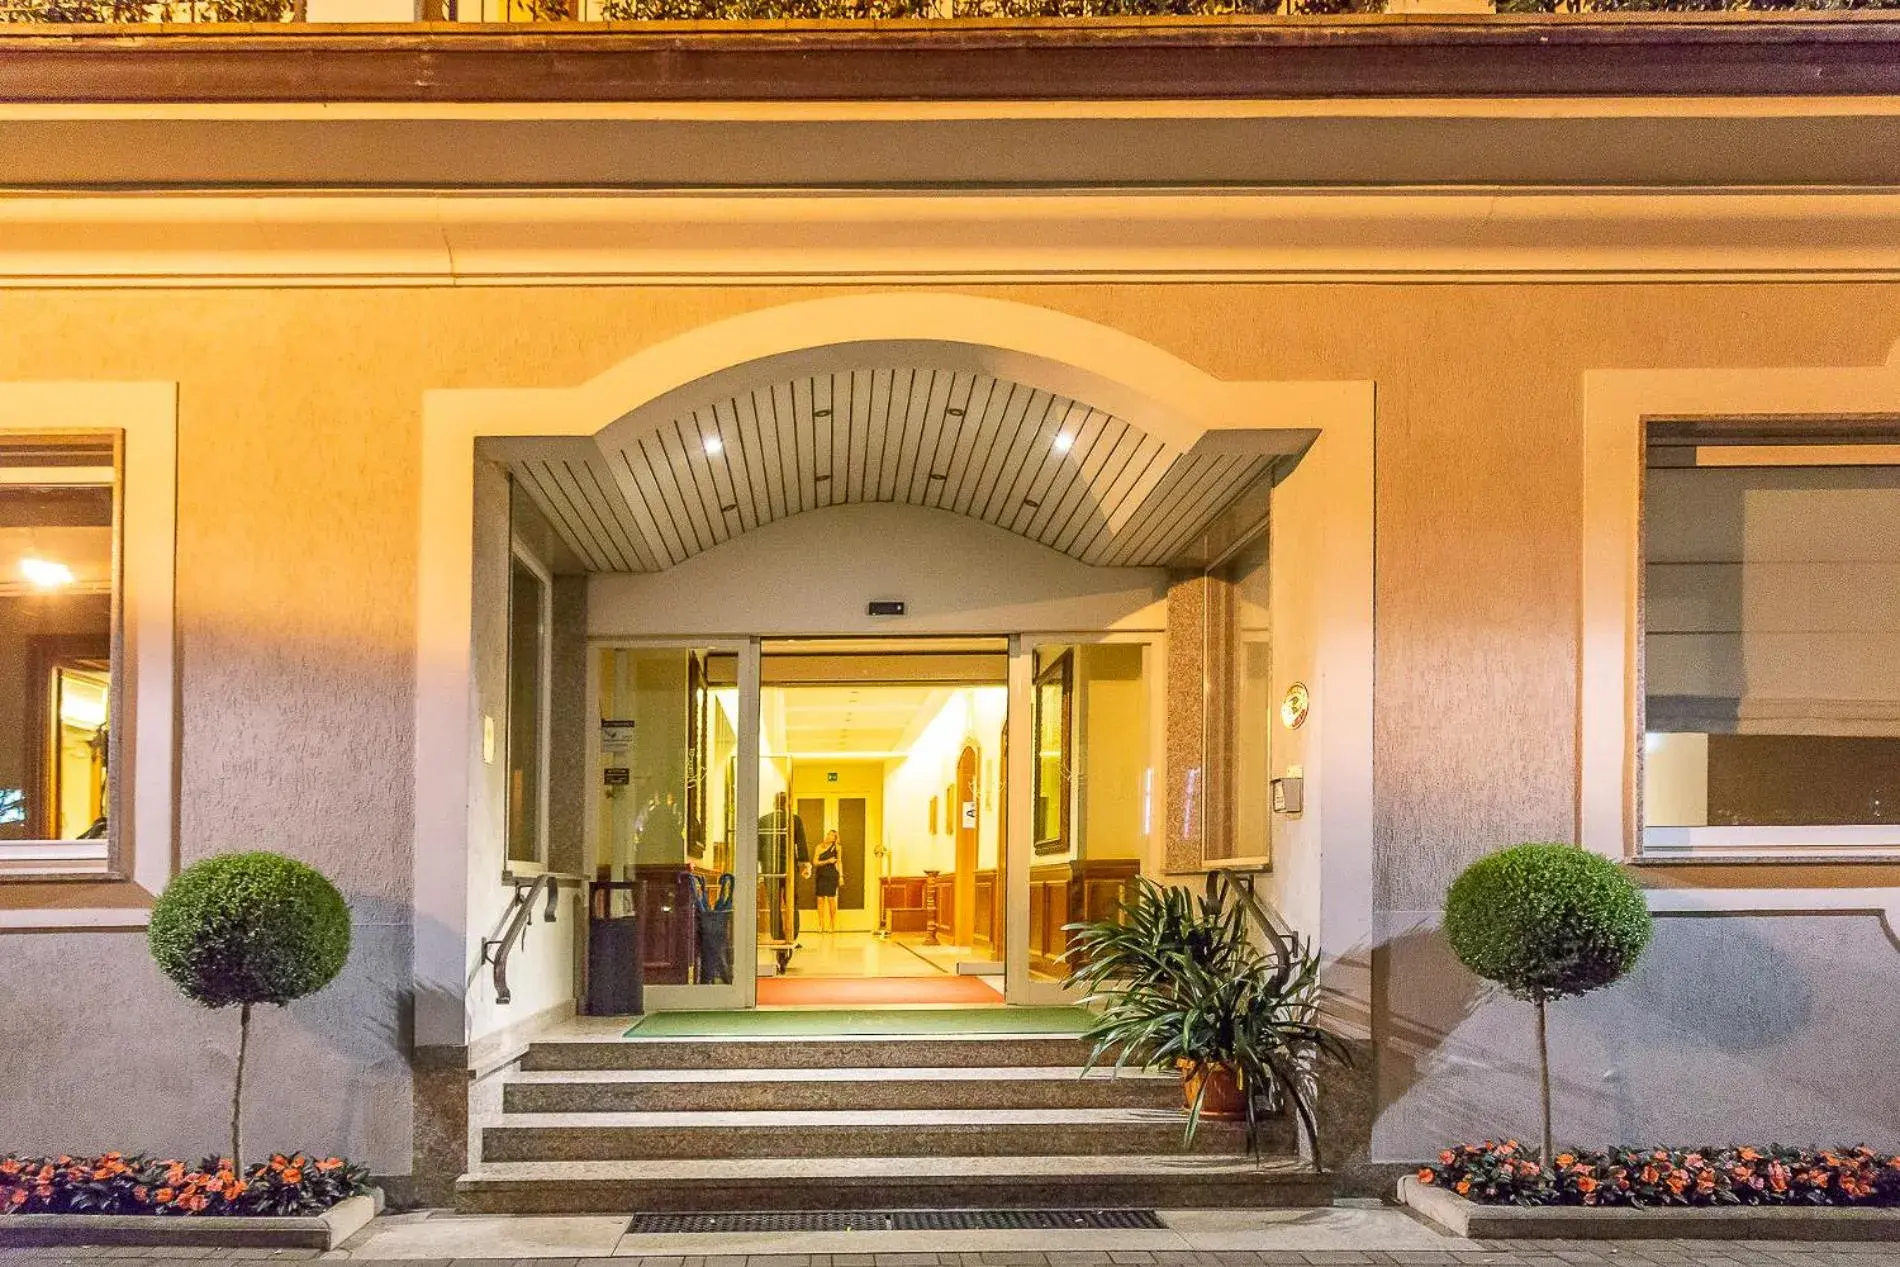 Facade/entrance in Hotel Della Torre